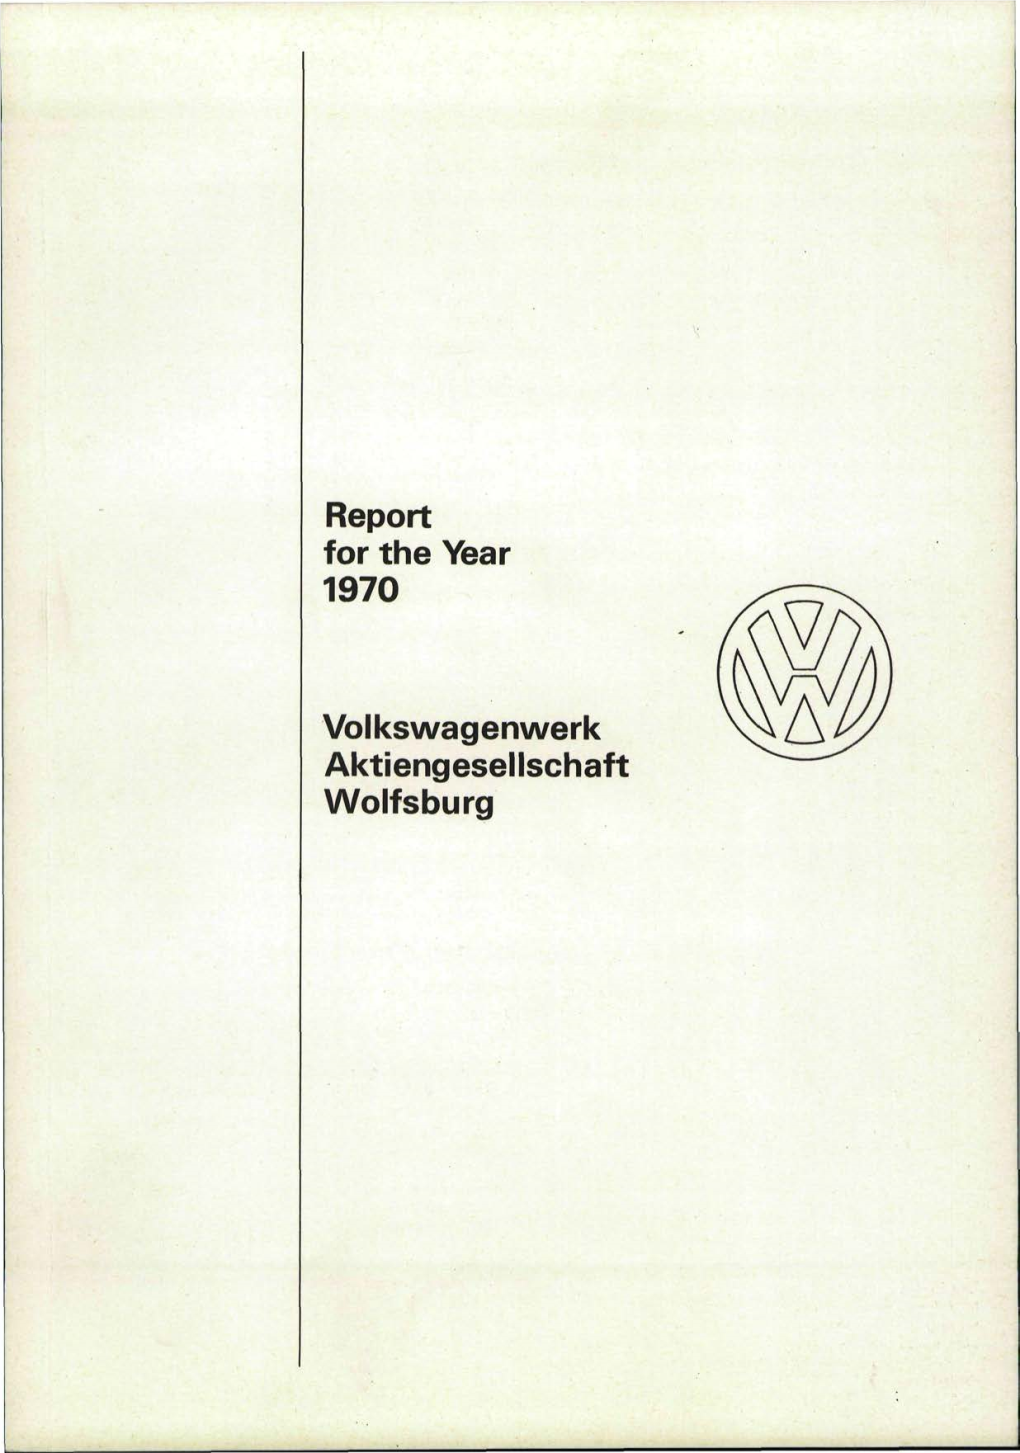 Report for the Year 1970 Volkswagenwerk Aktiengesellschaft Wolfsburg